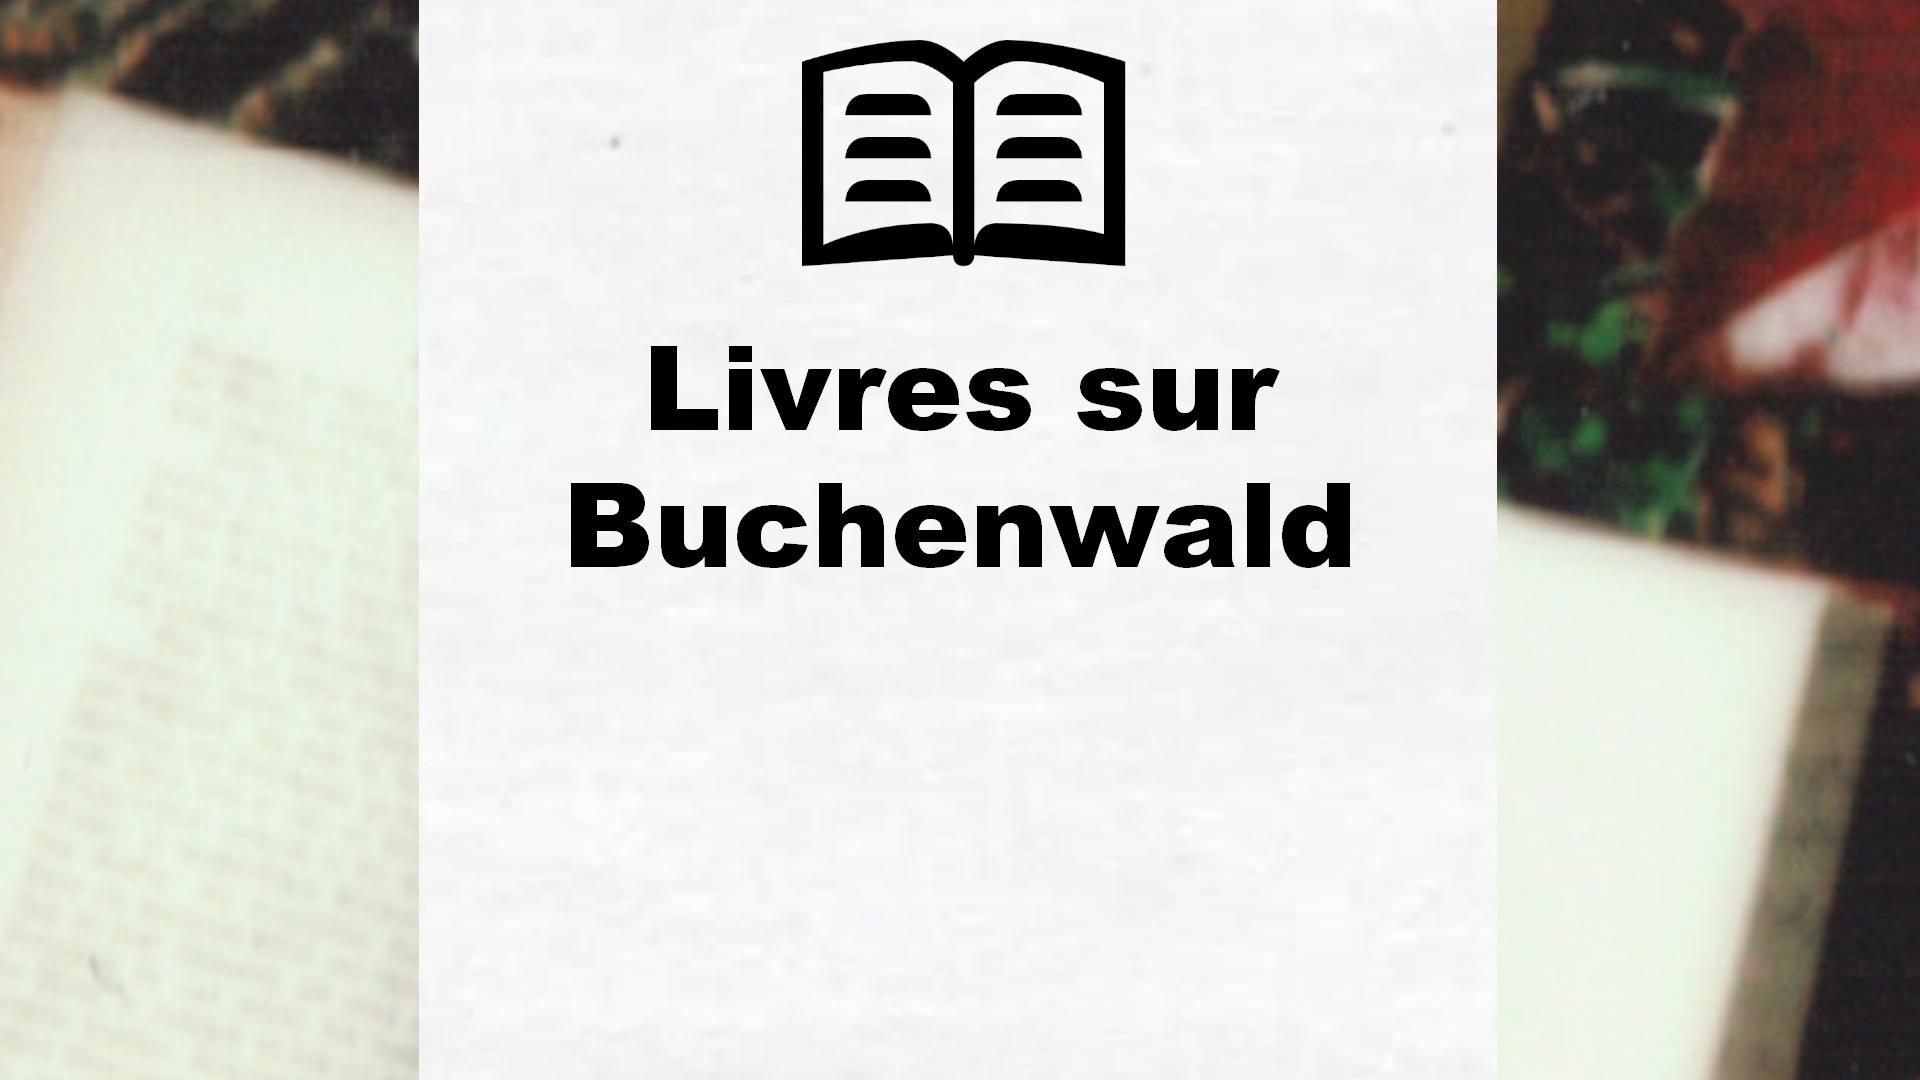 Livres sur Buchenwald